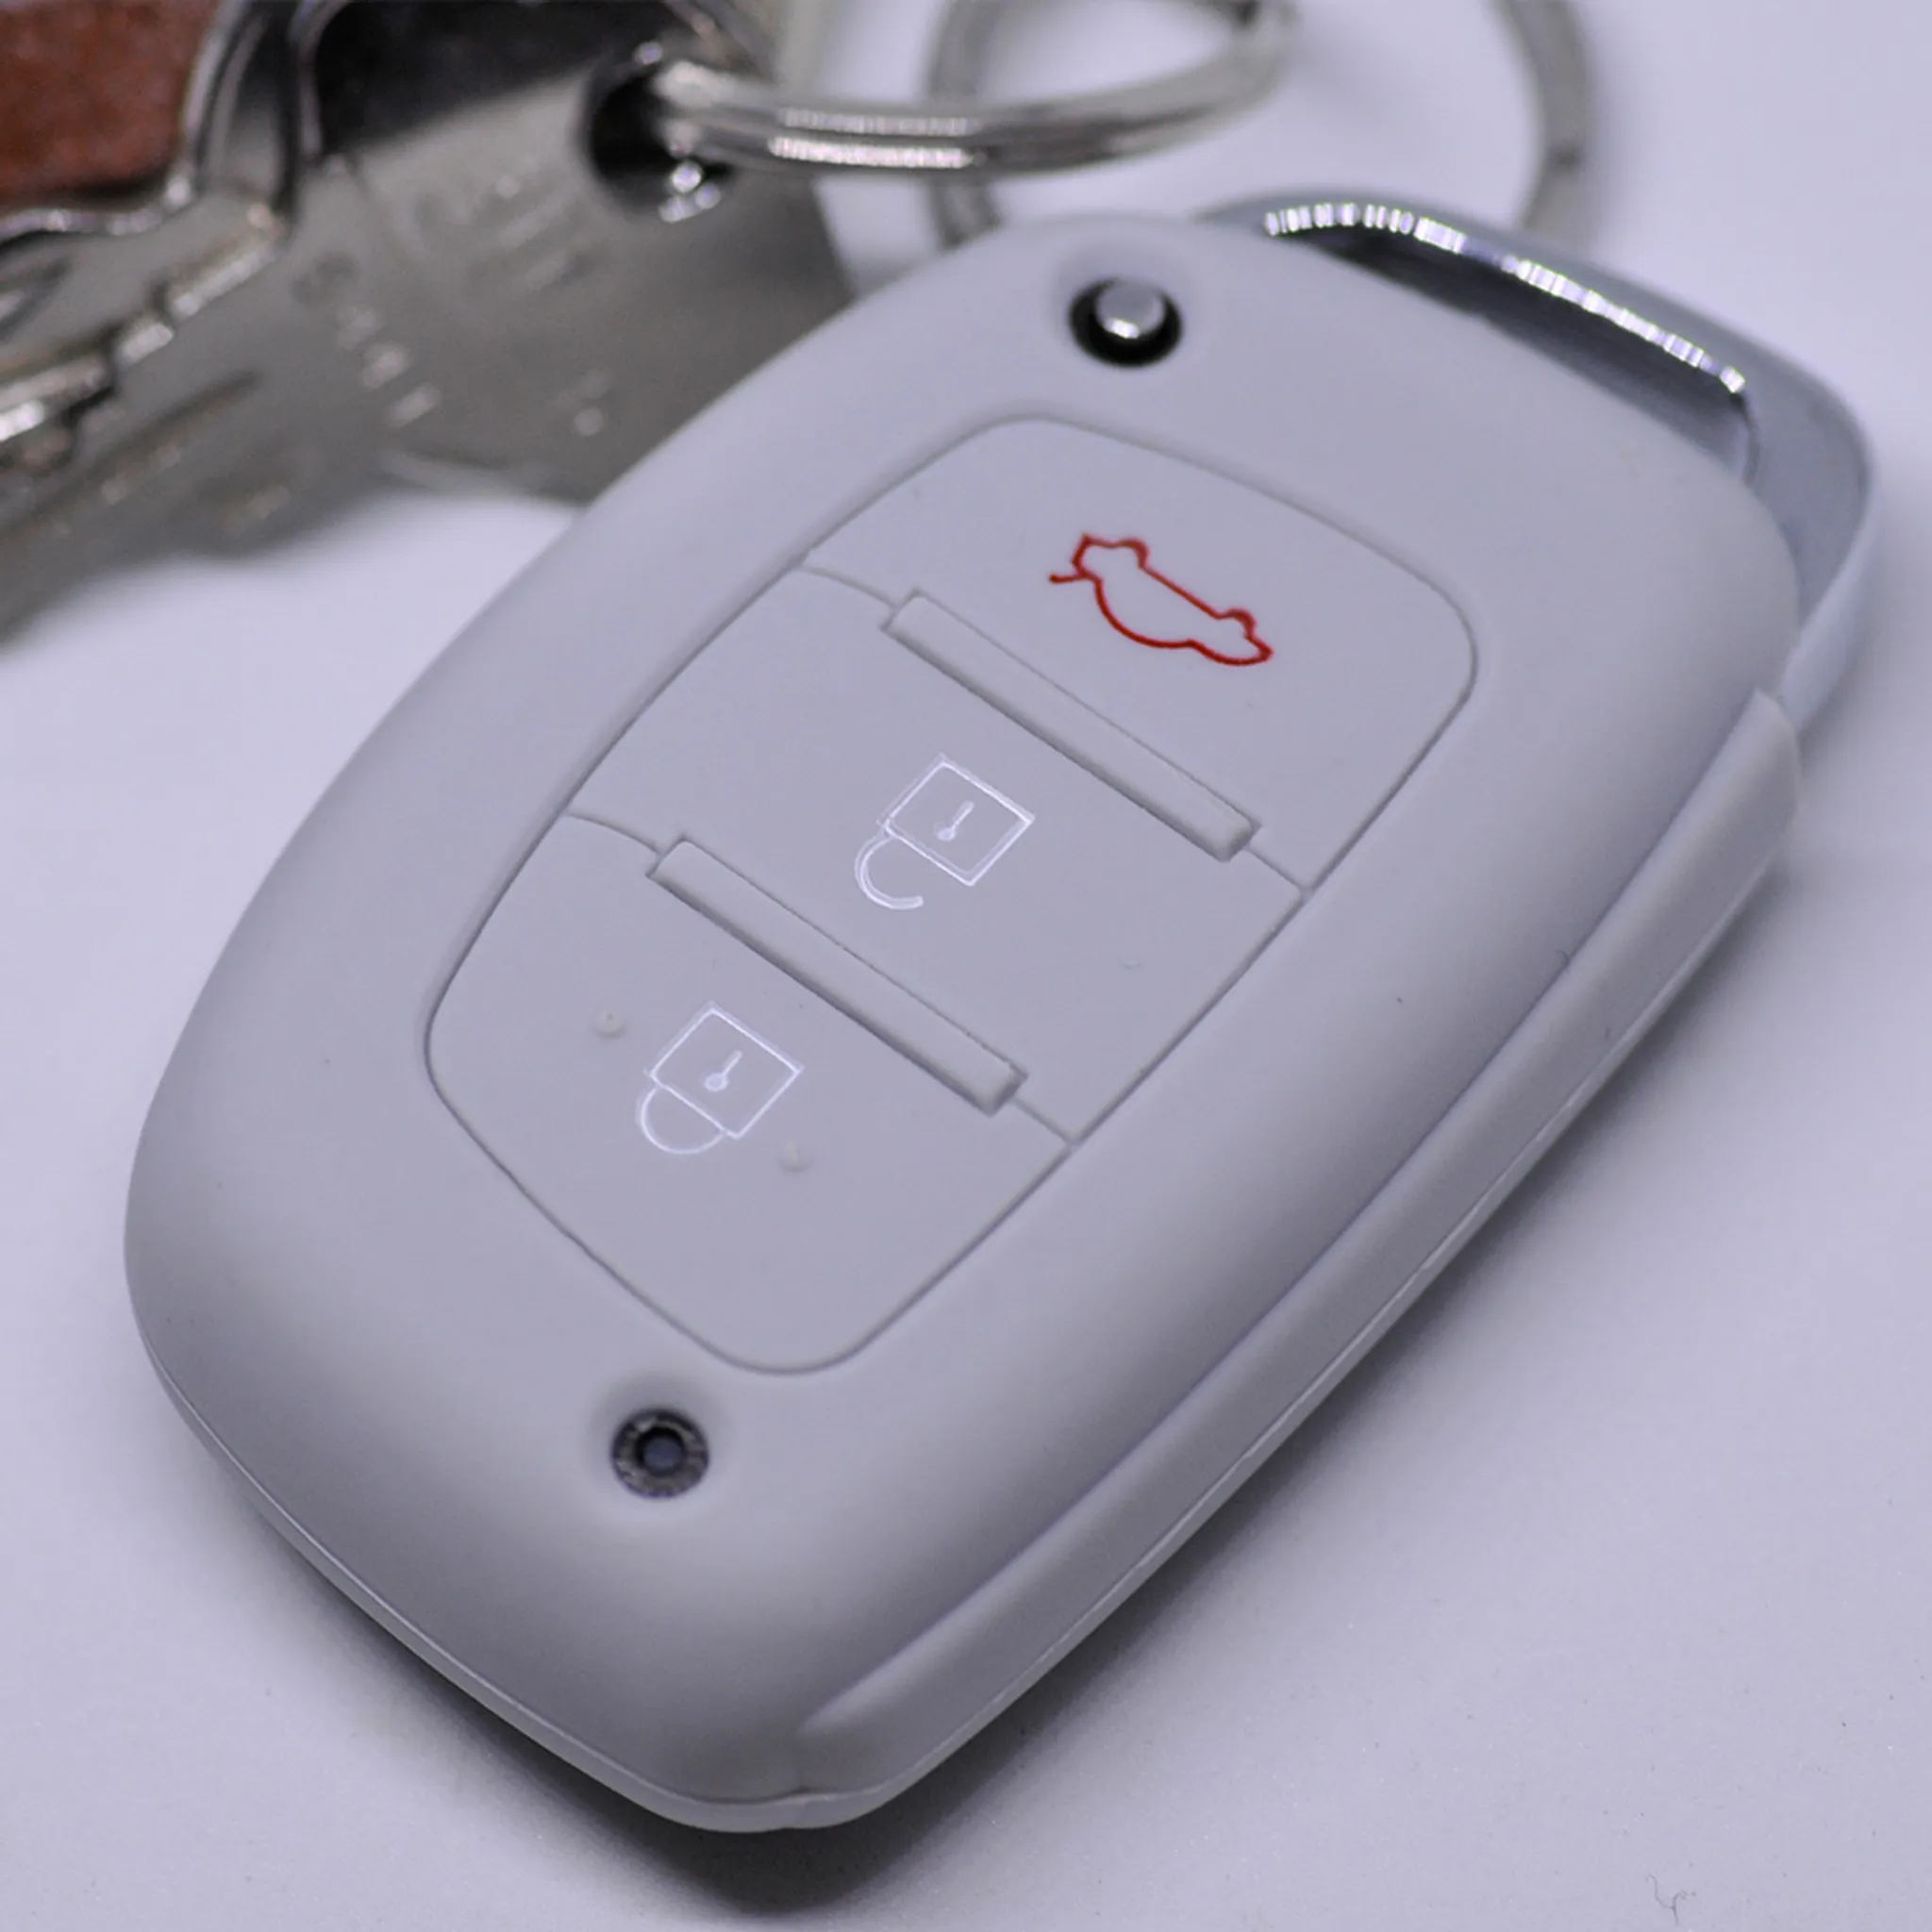 Silikon Carbon-Look Schlüssel Cover passend für Toyota Schlüssel